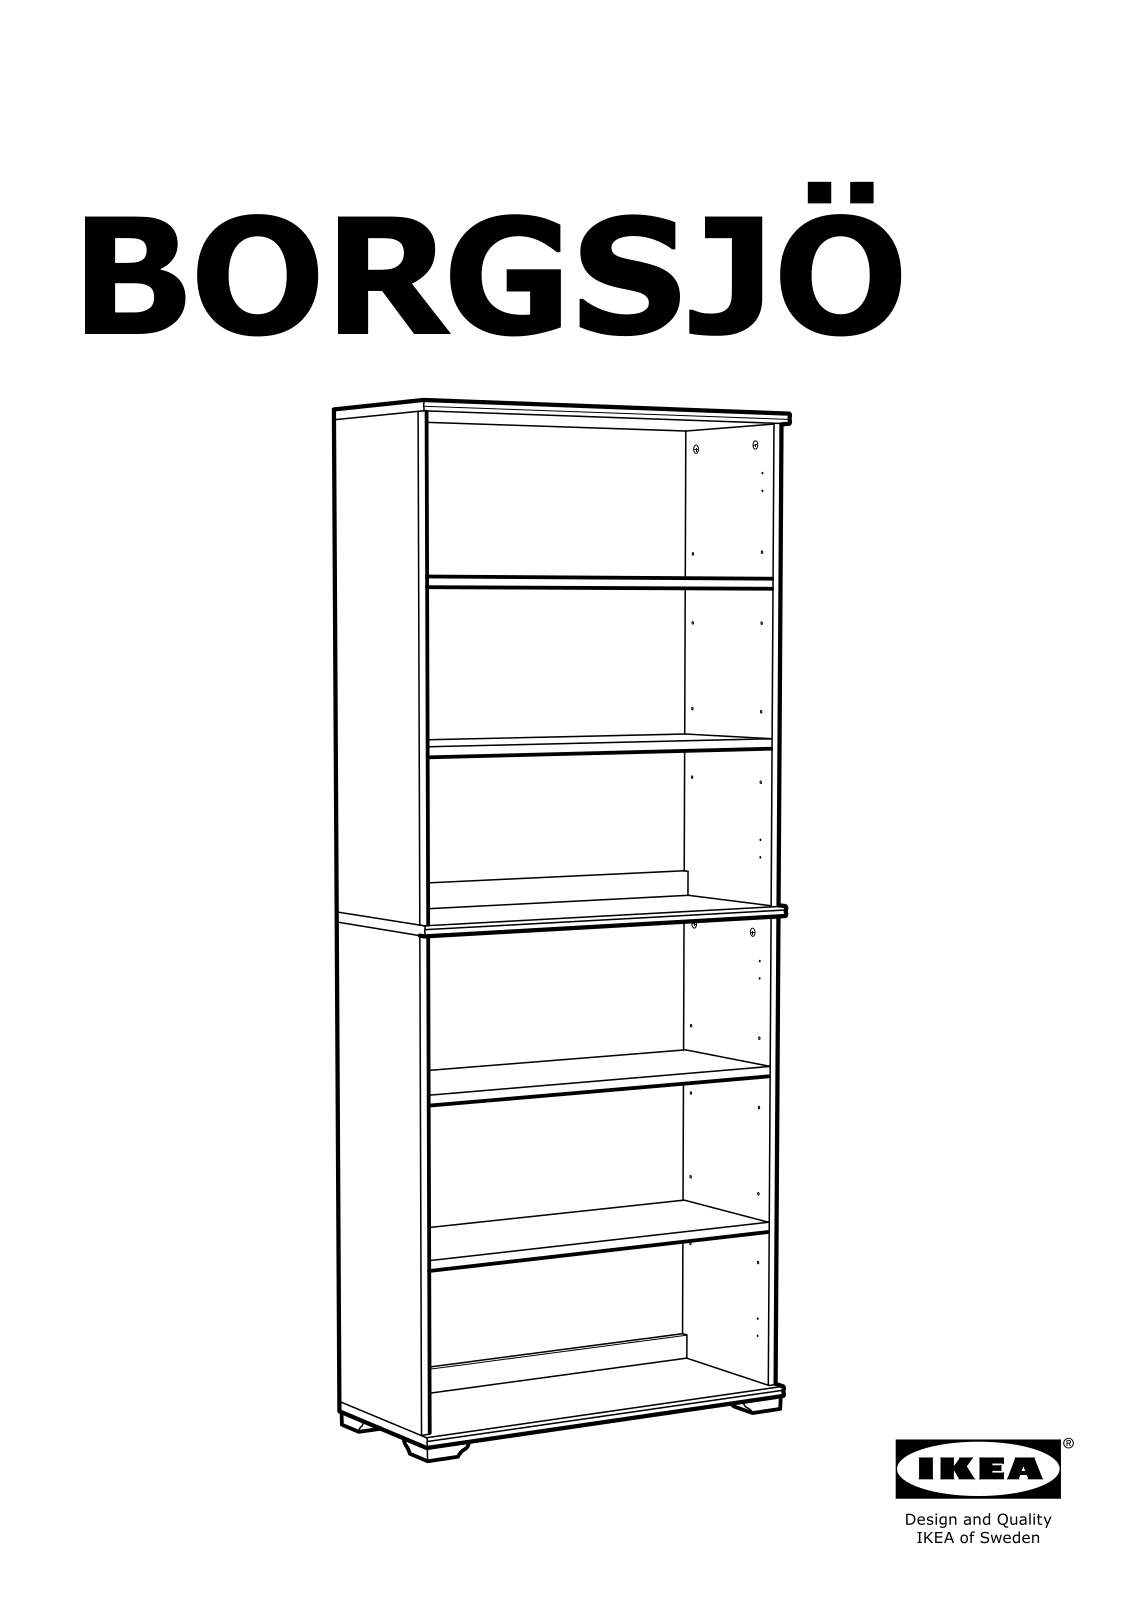 IKEA BORGSJO User Manual